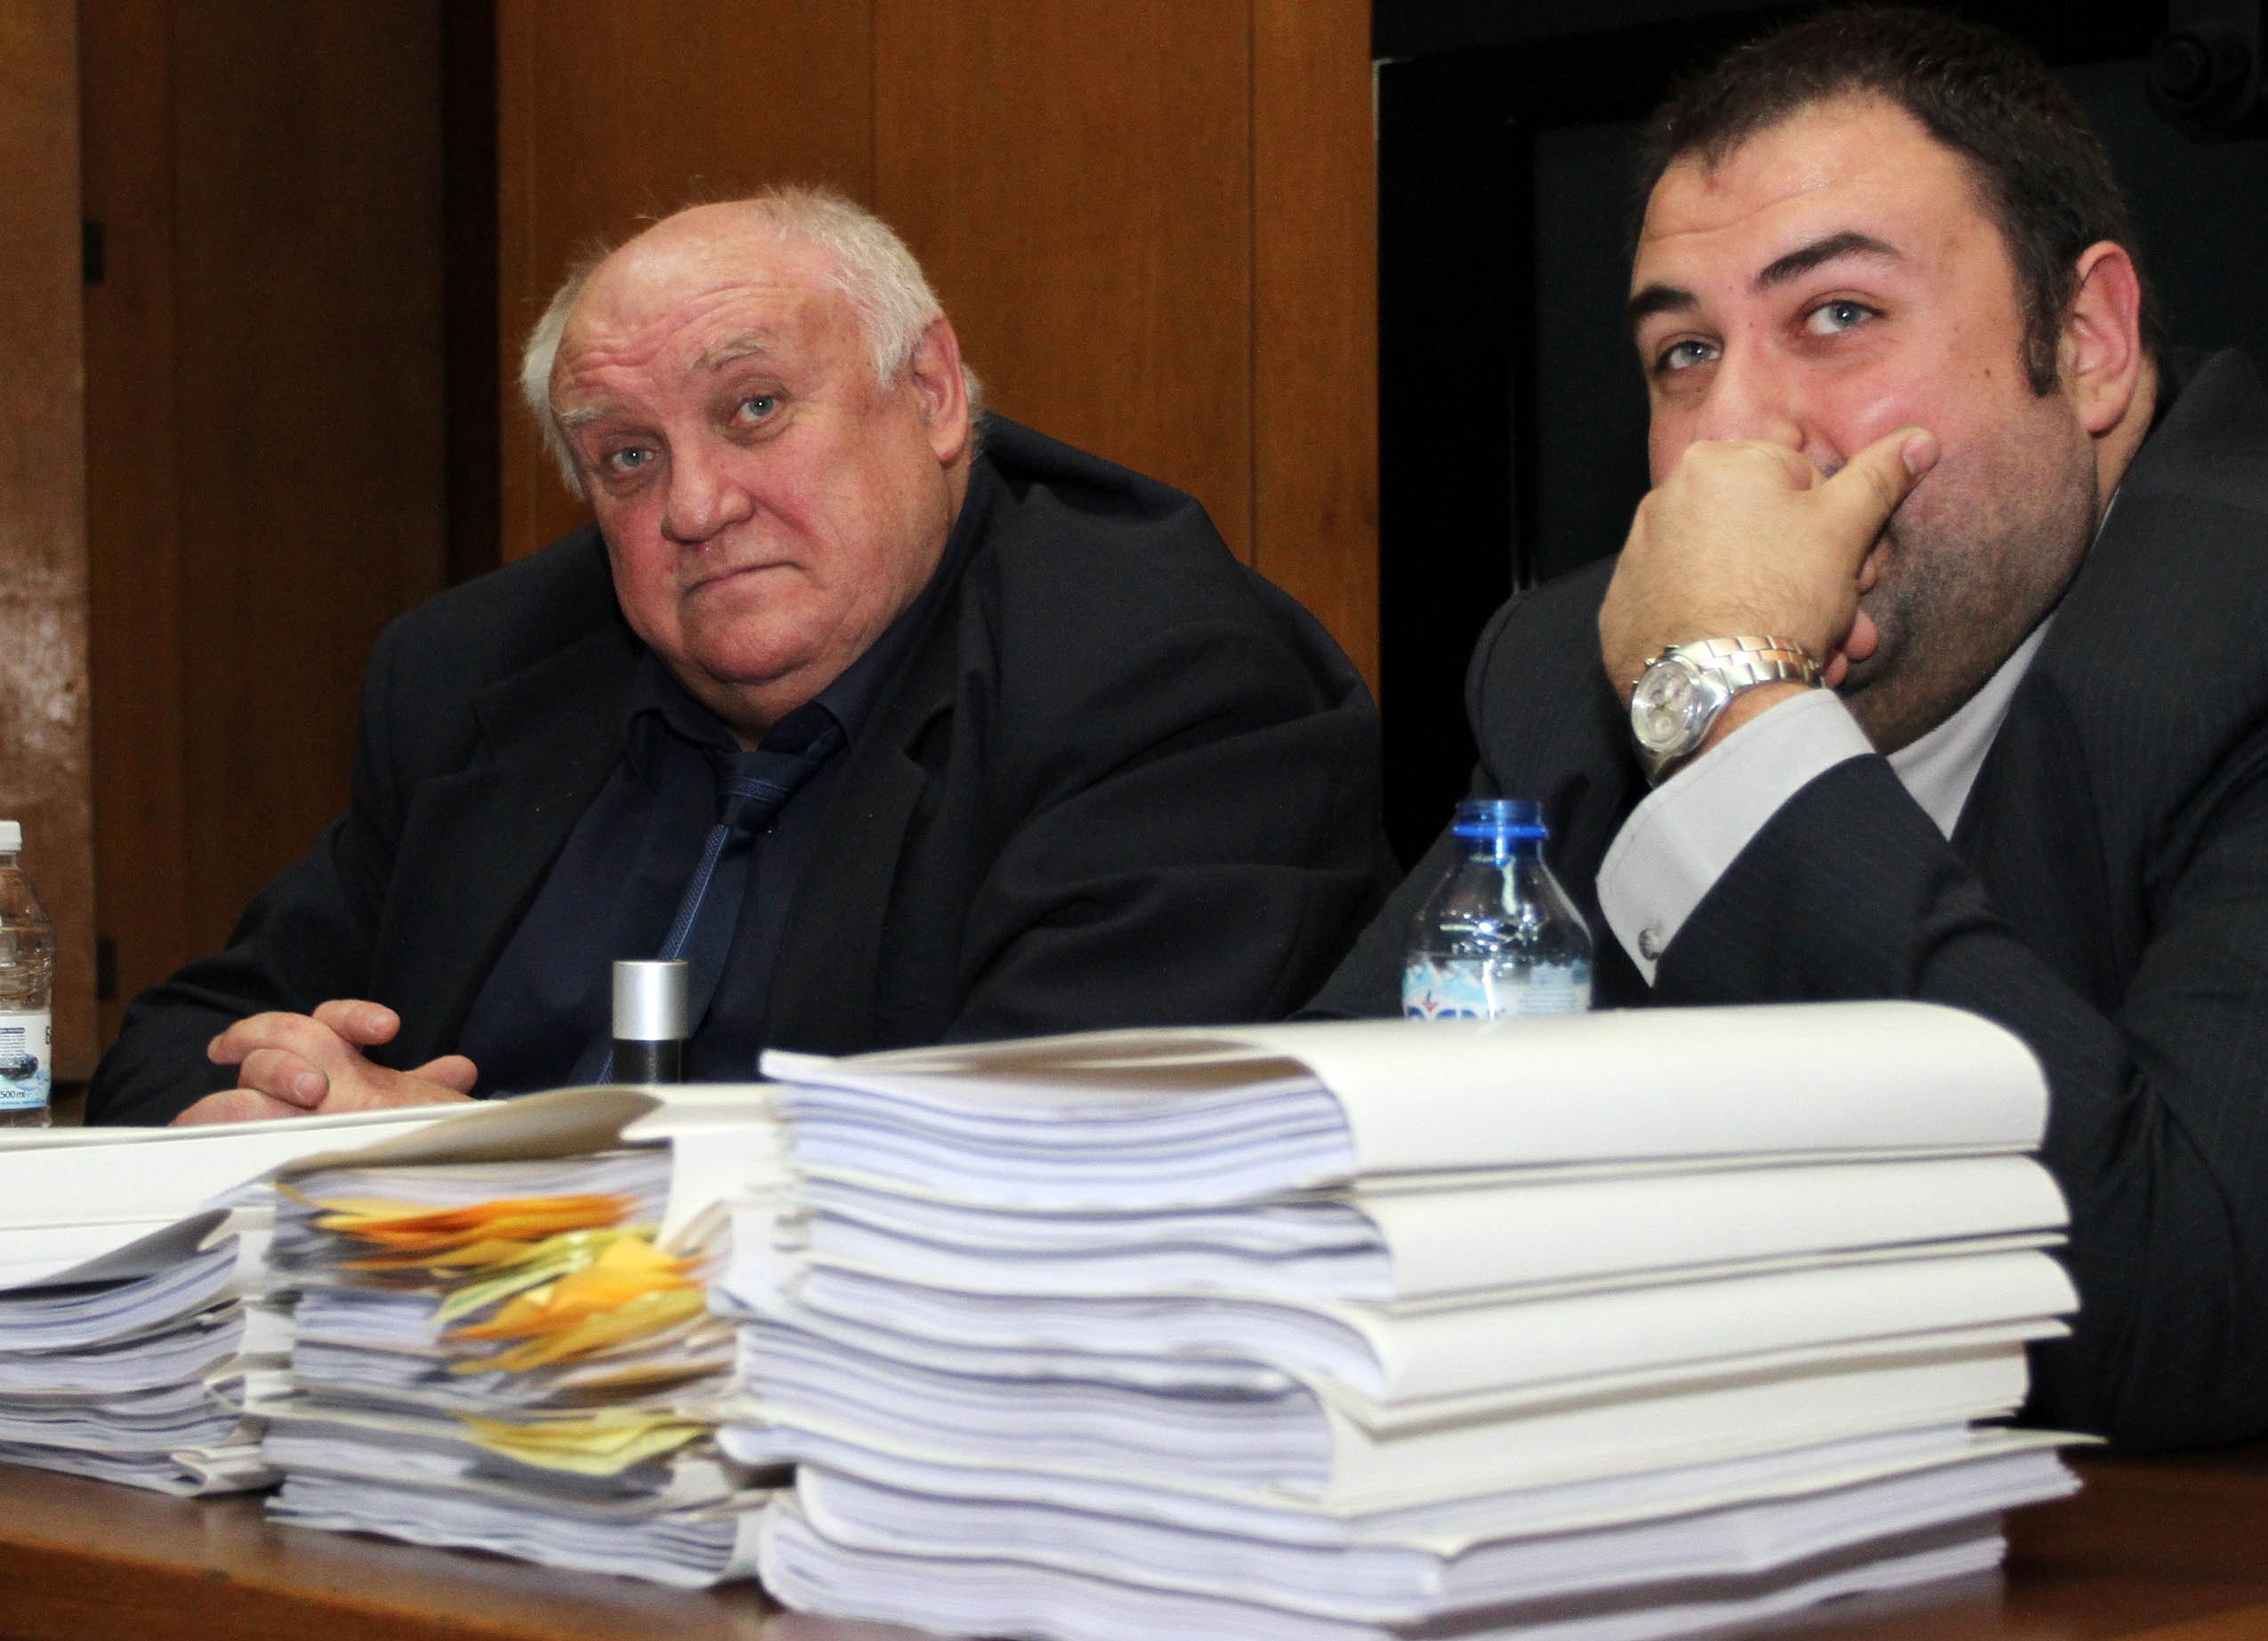 Адвокат Марковски: Лазар Колев се разплака от изненада, не от угризения